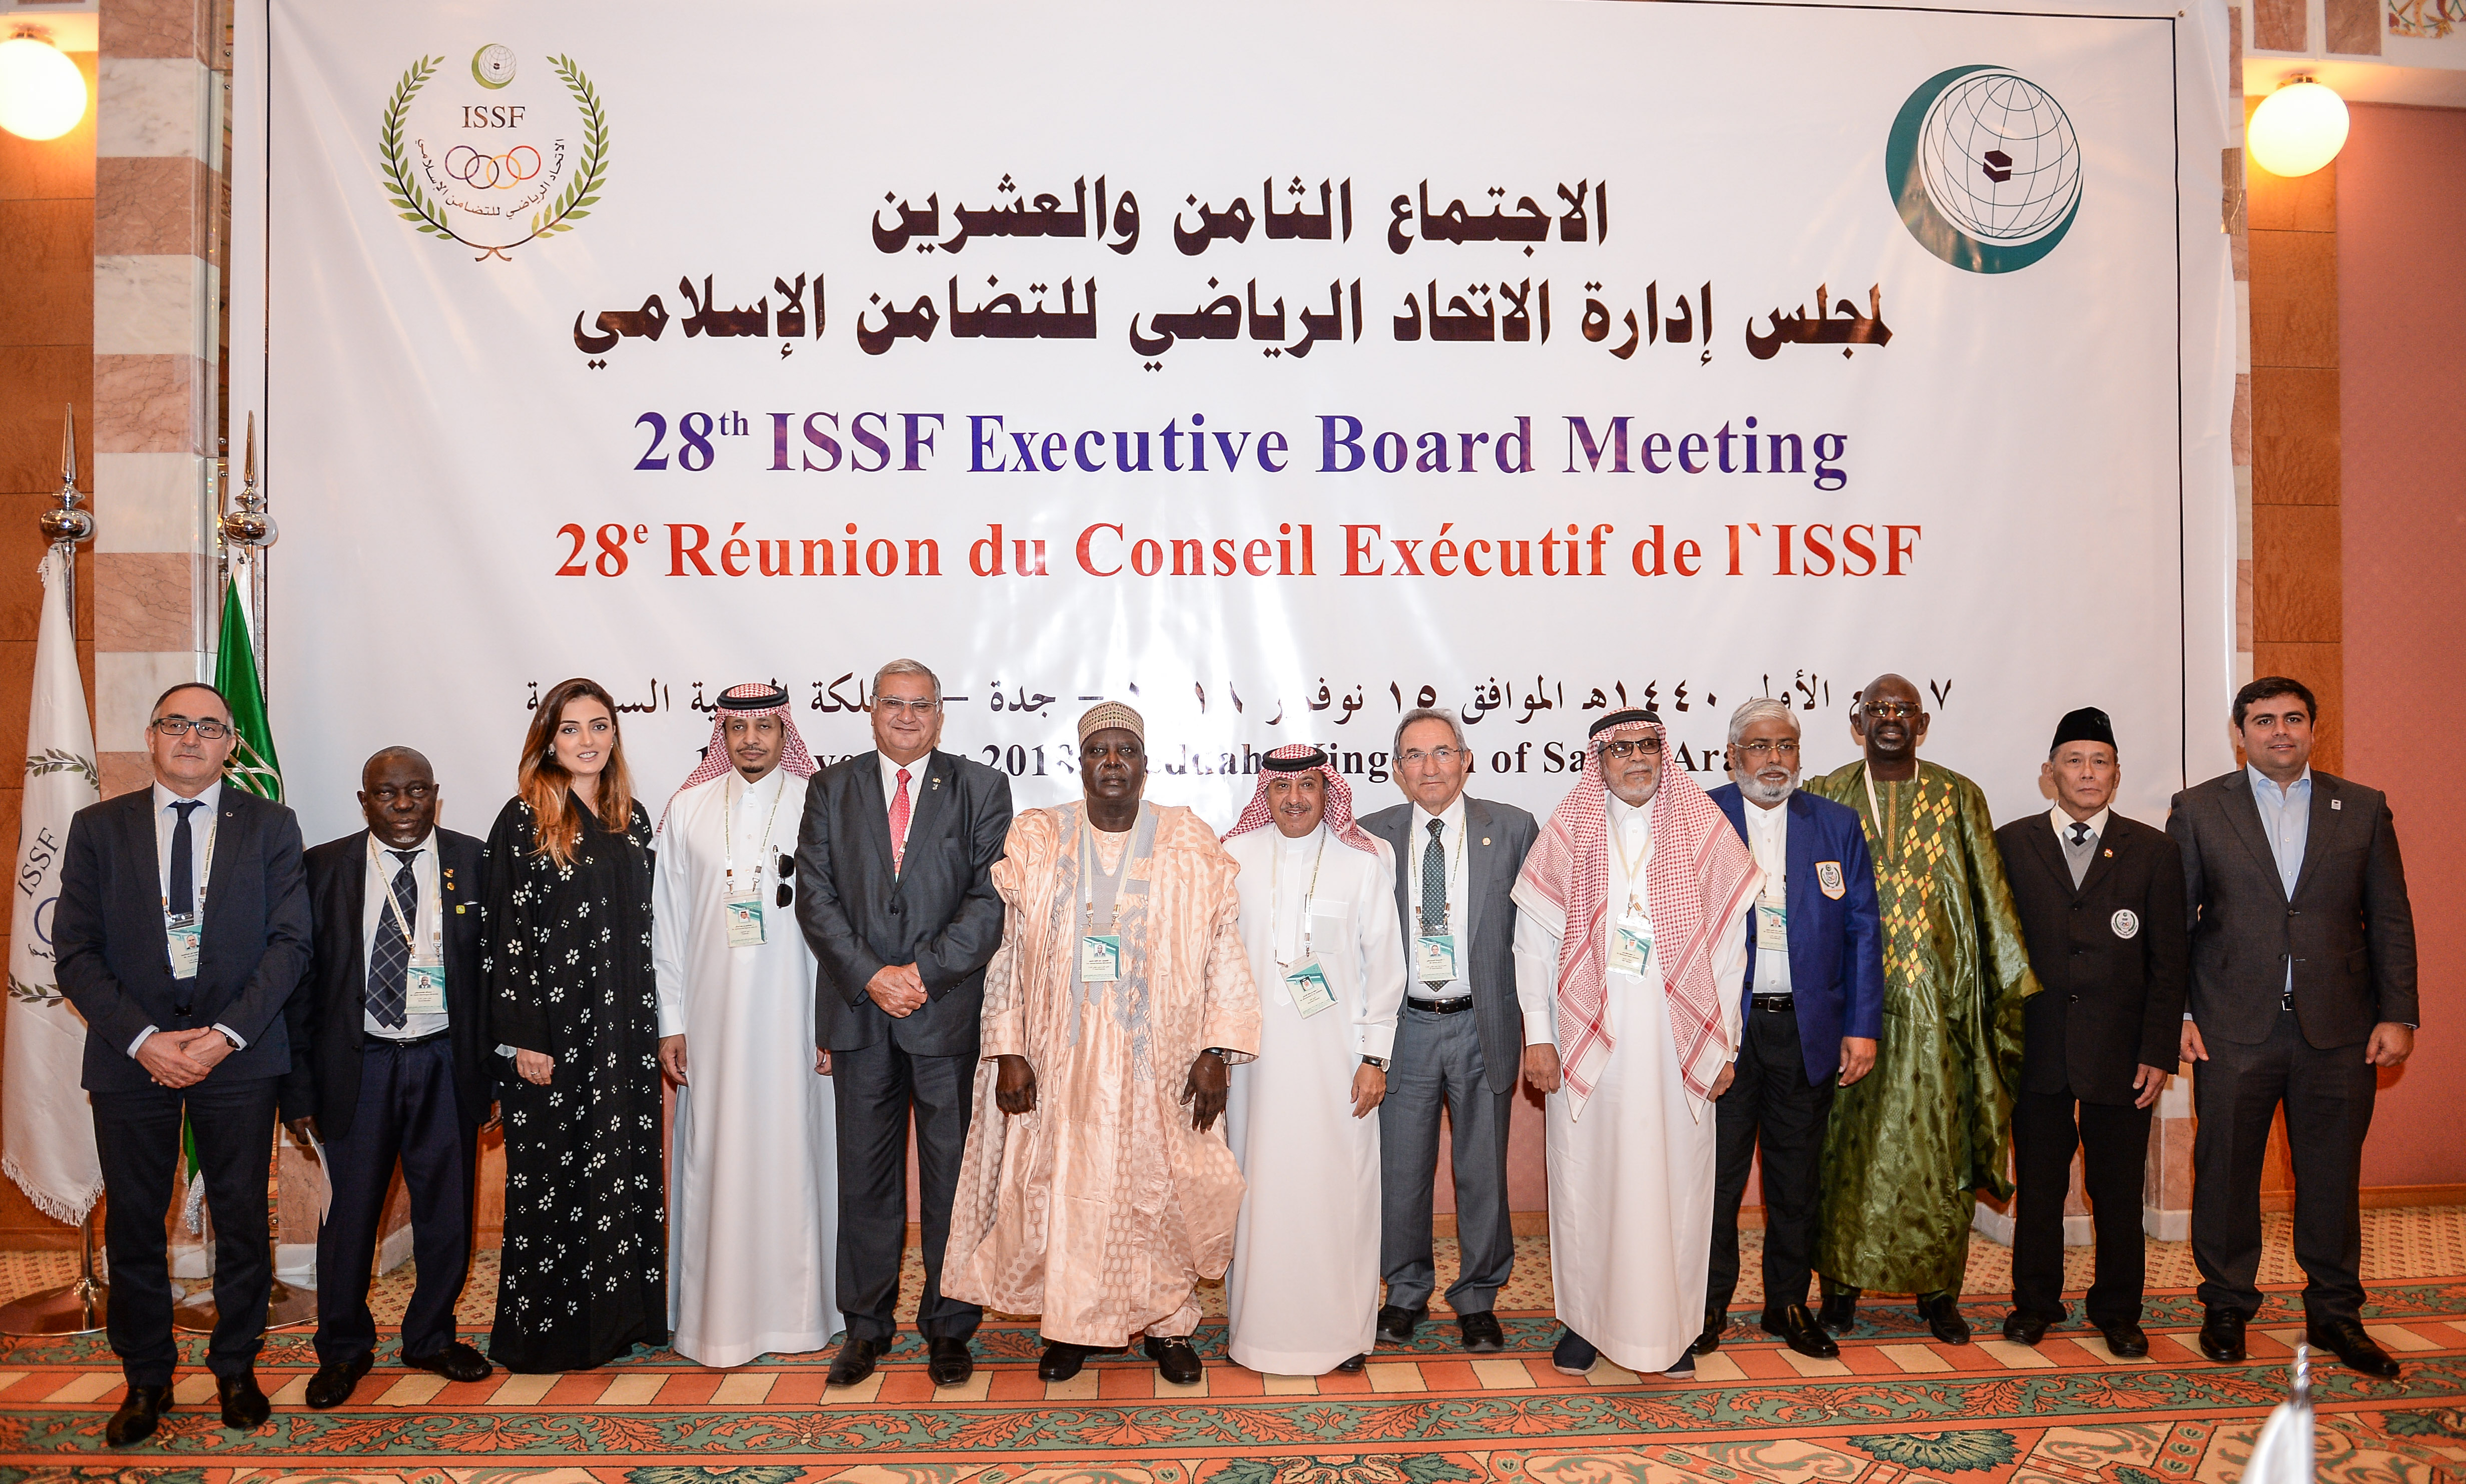  La 28ème réunion du conseil exécutif de la Fédération sportive de la solidarité islamique s’est tenue à Djedda